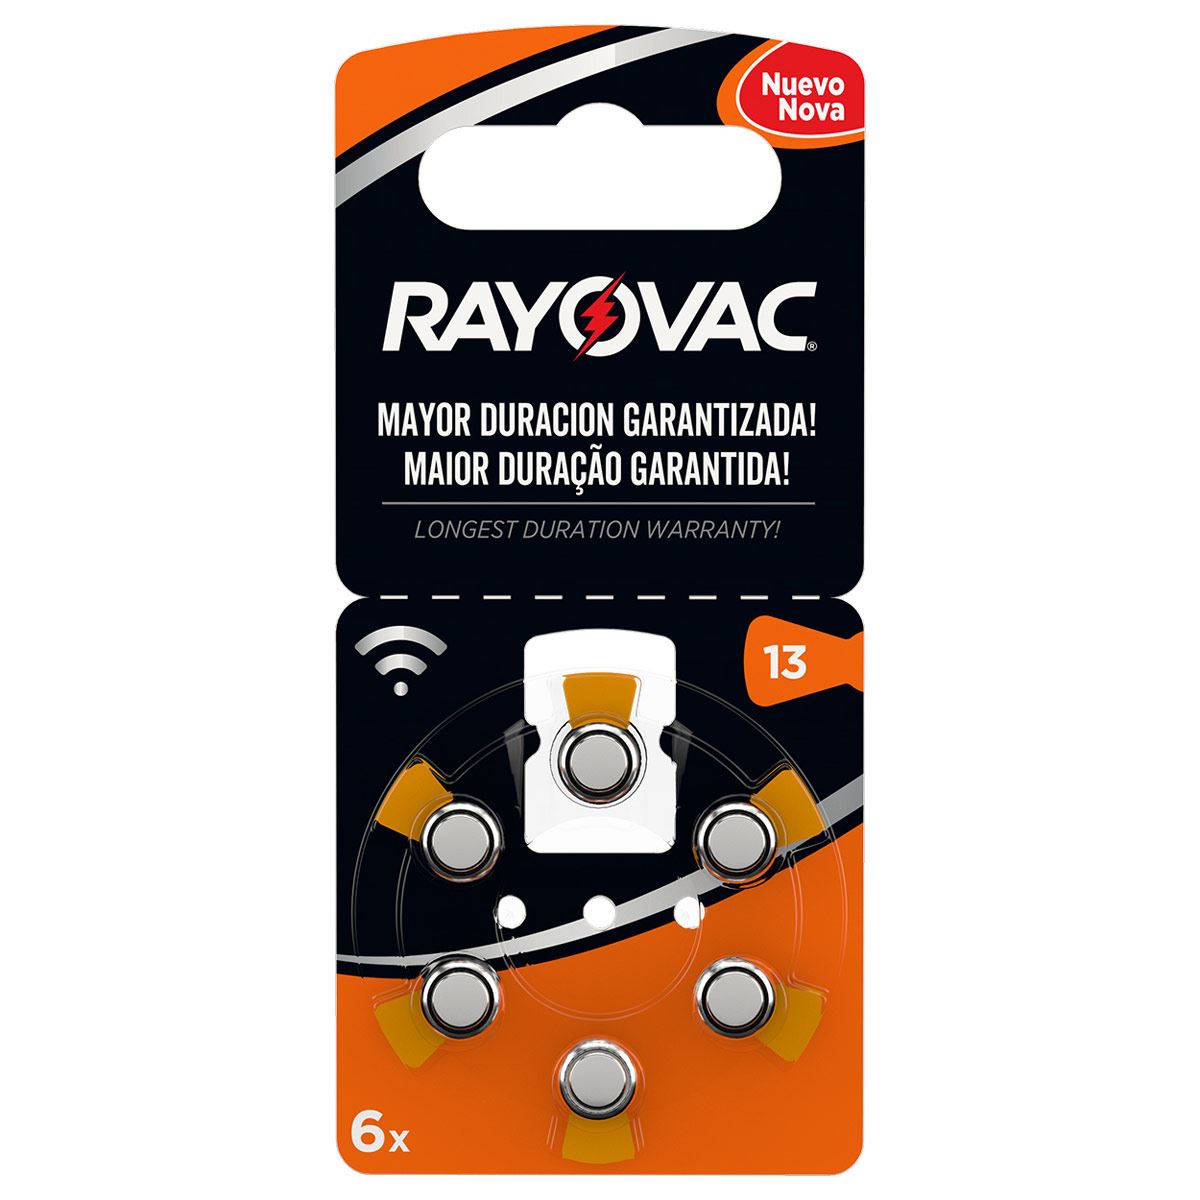 Pilas Rayovac 13, oferta de accesorios para nuestros audífonos